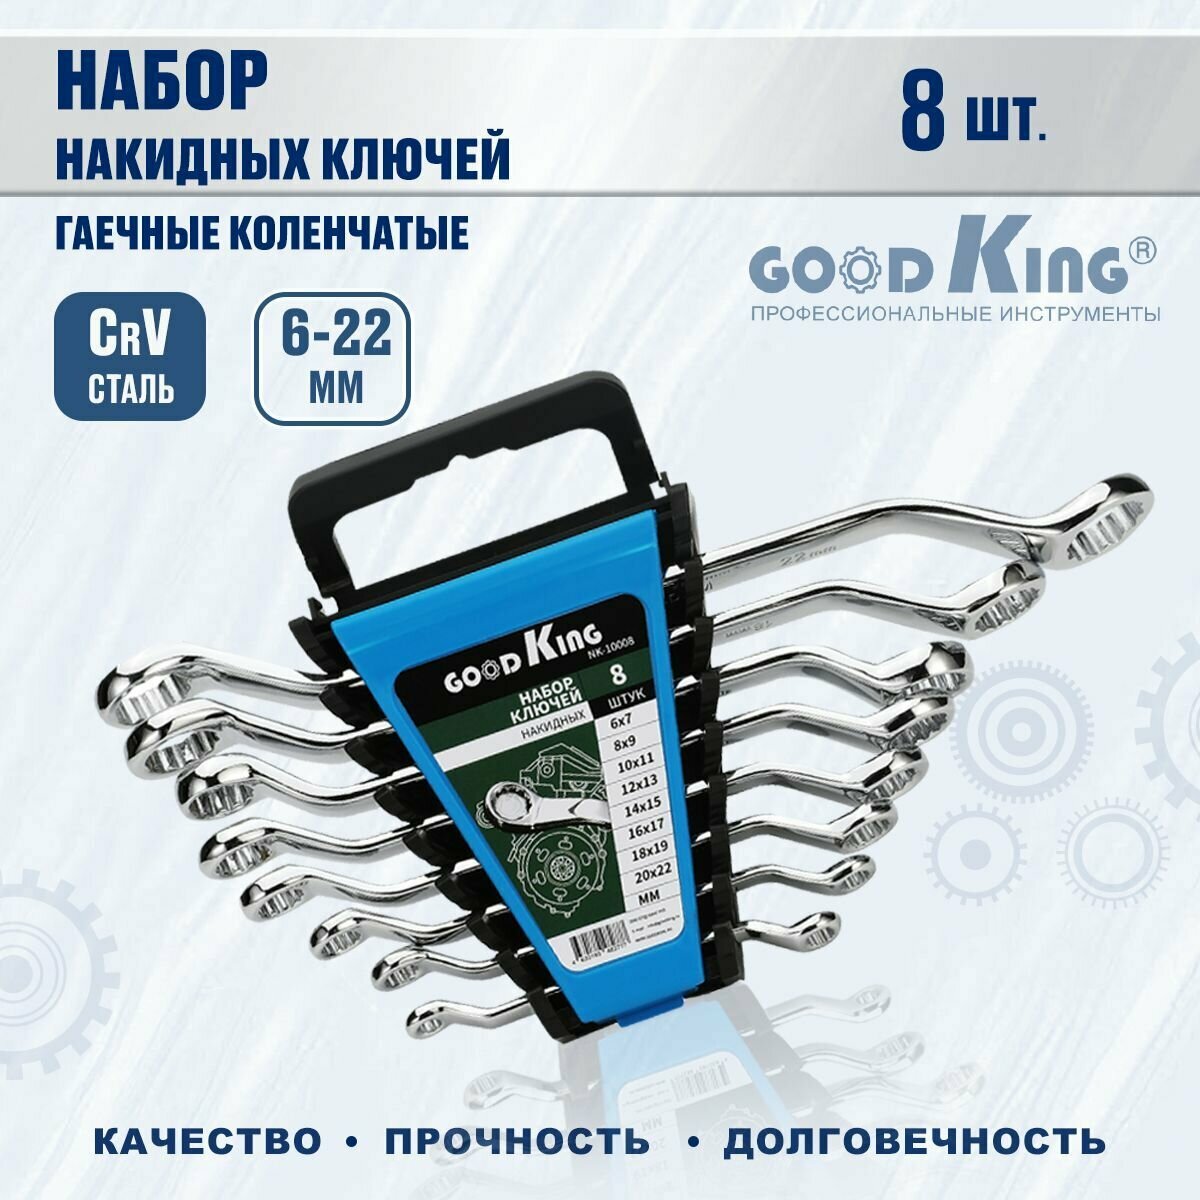 GOODKING Набор гаечных коленчатых ключей8 предметов NK-10008